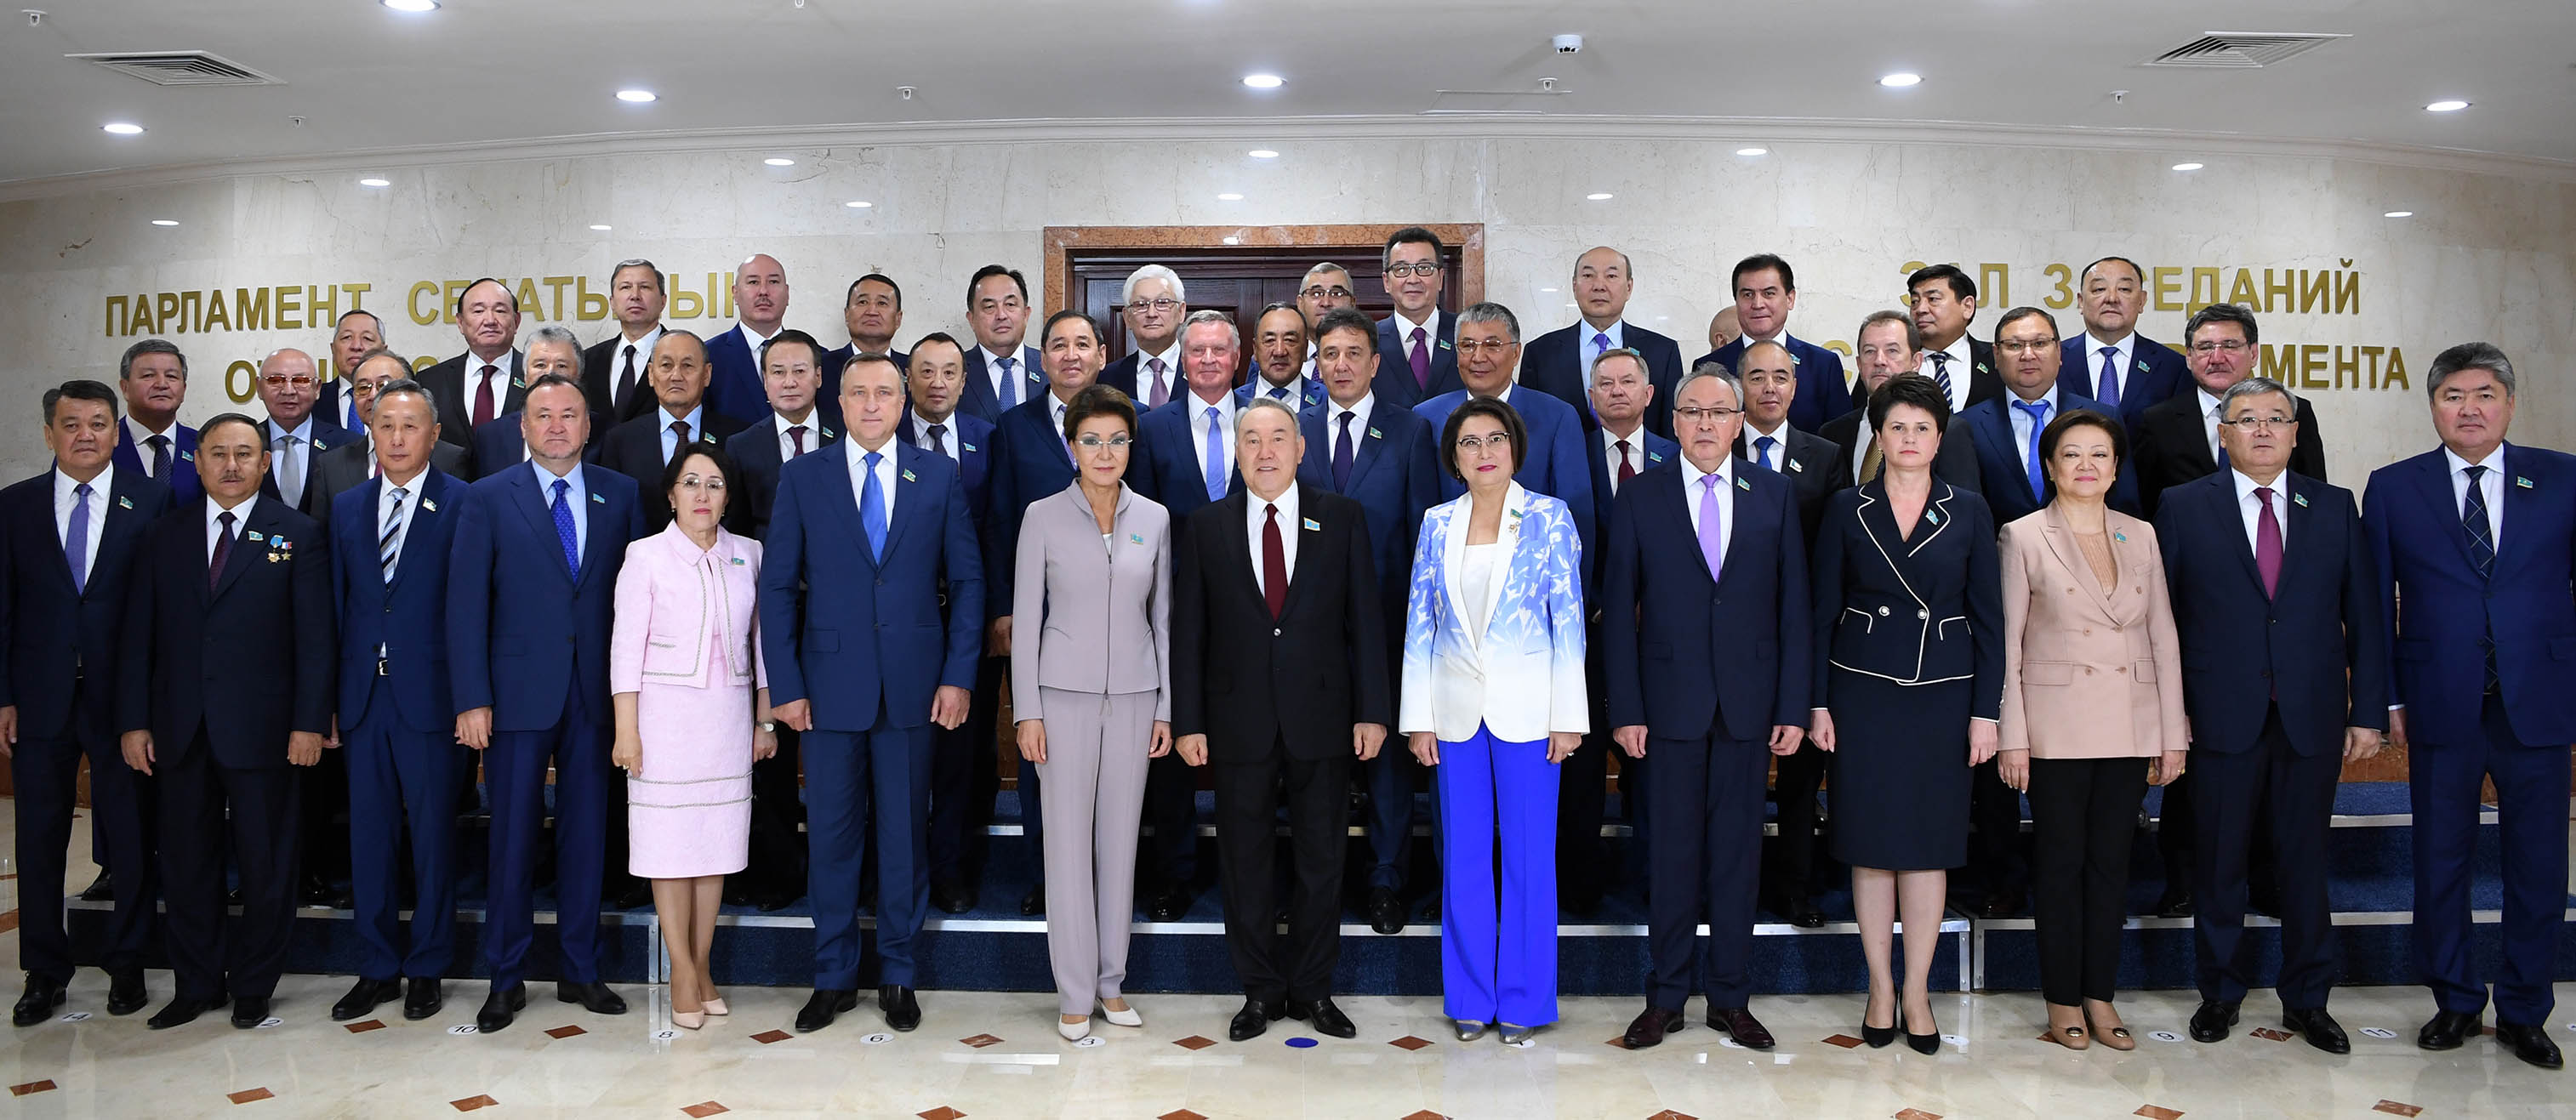 Қазақстанның Тұңғыш Президентіне «Құрметті сенатор» мәртебесі берілді